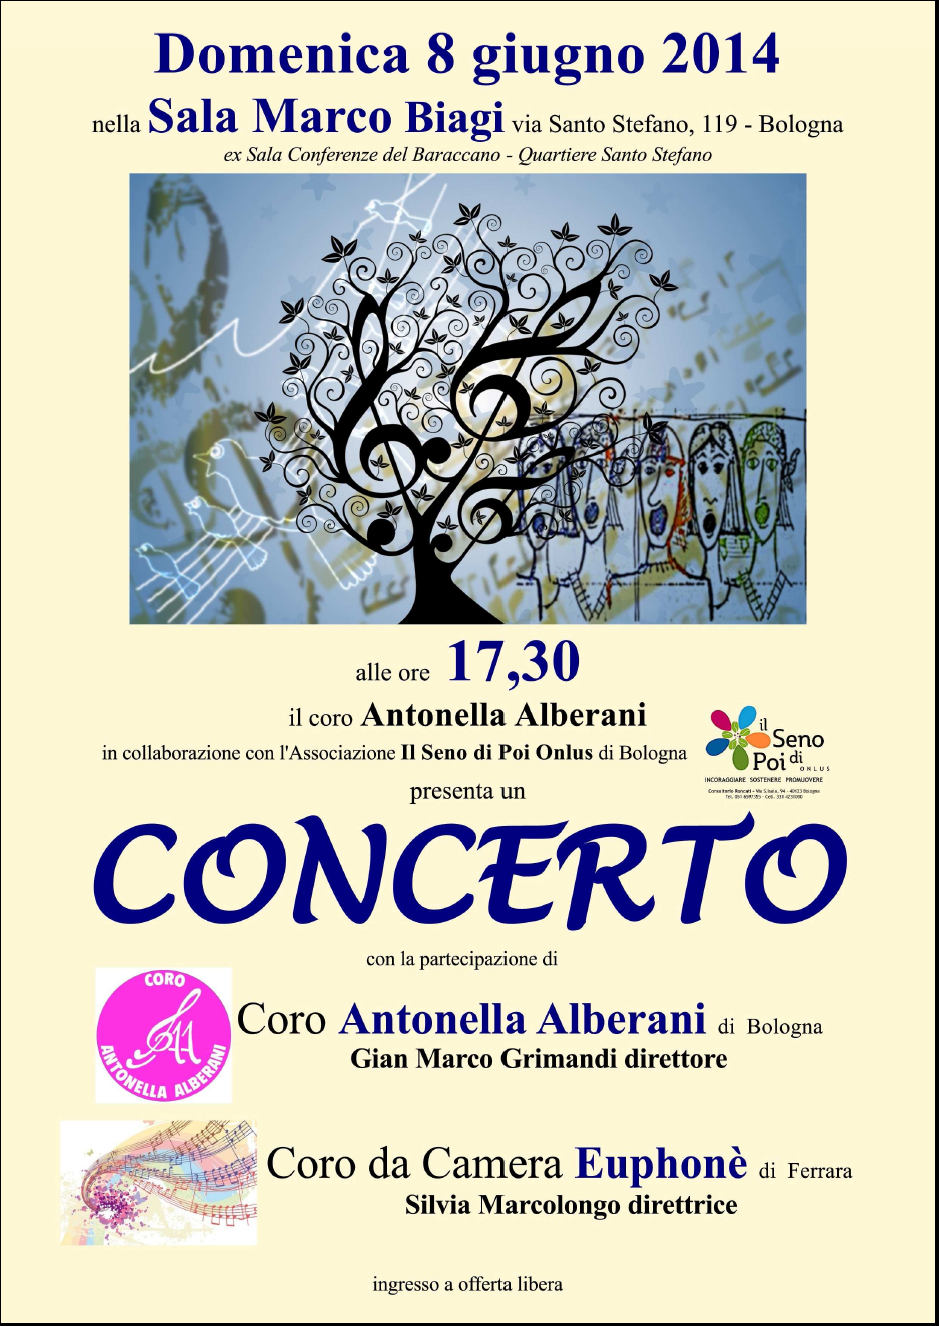 Il coro Antonella Alberani presenta un Concerto